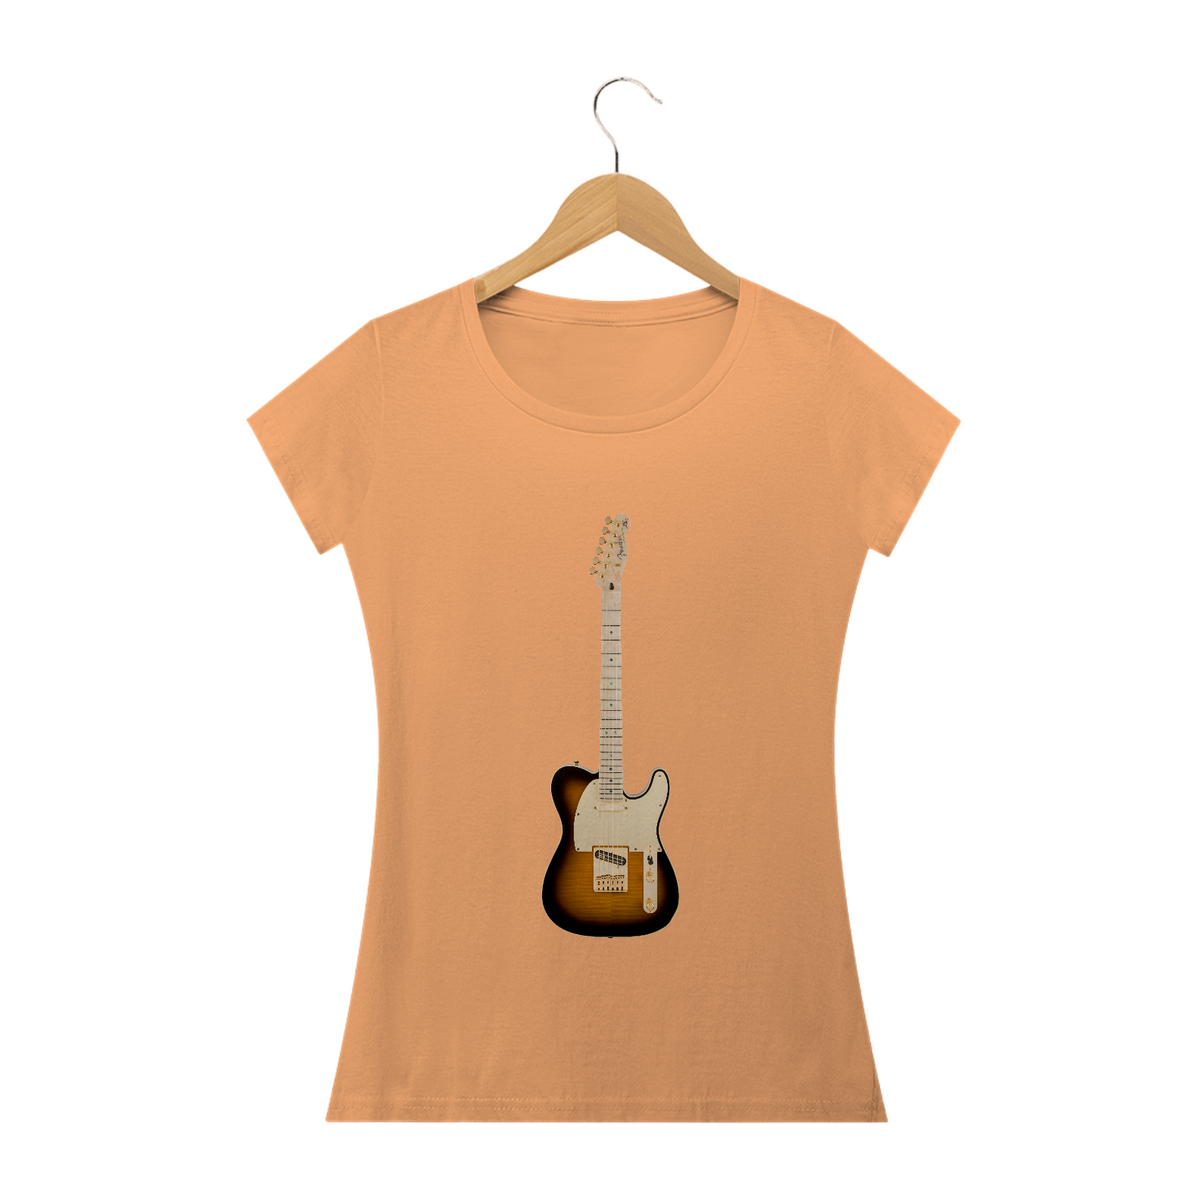 Nome do produto: Baby Long Estonada - Guitarra Fender Telecaster Richie Kotzen Siganture Tobacco Burst - Model 1